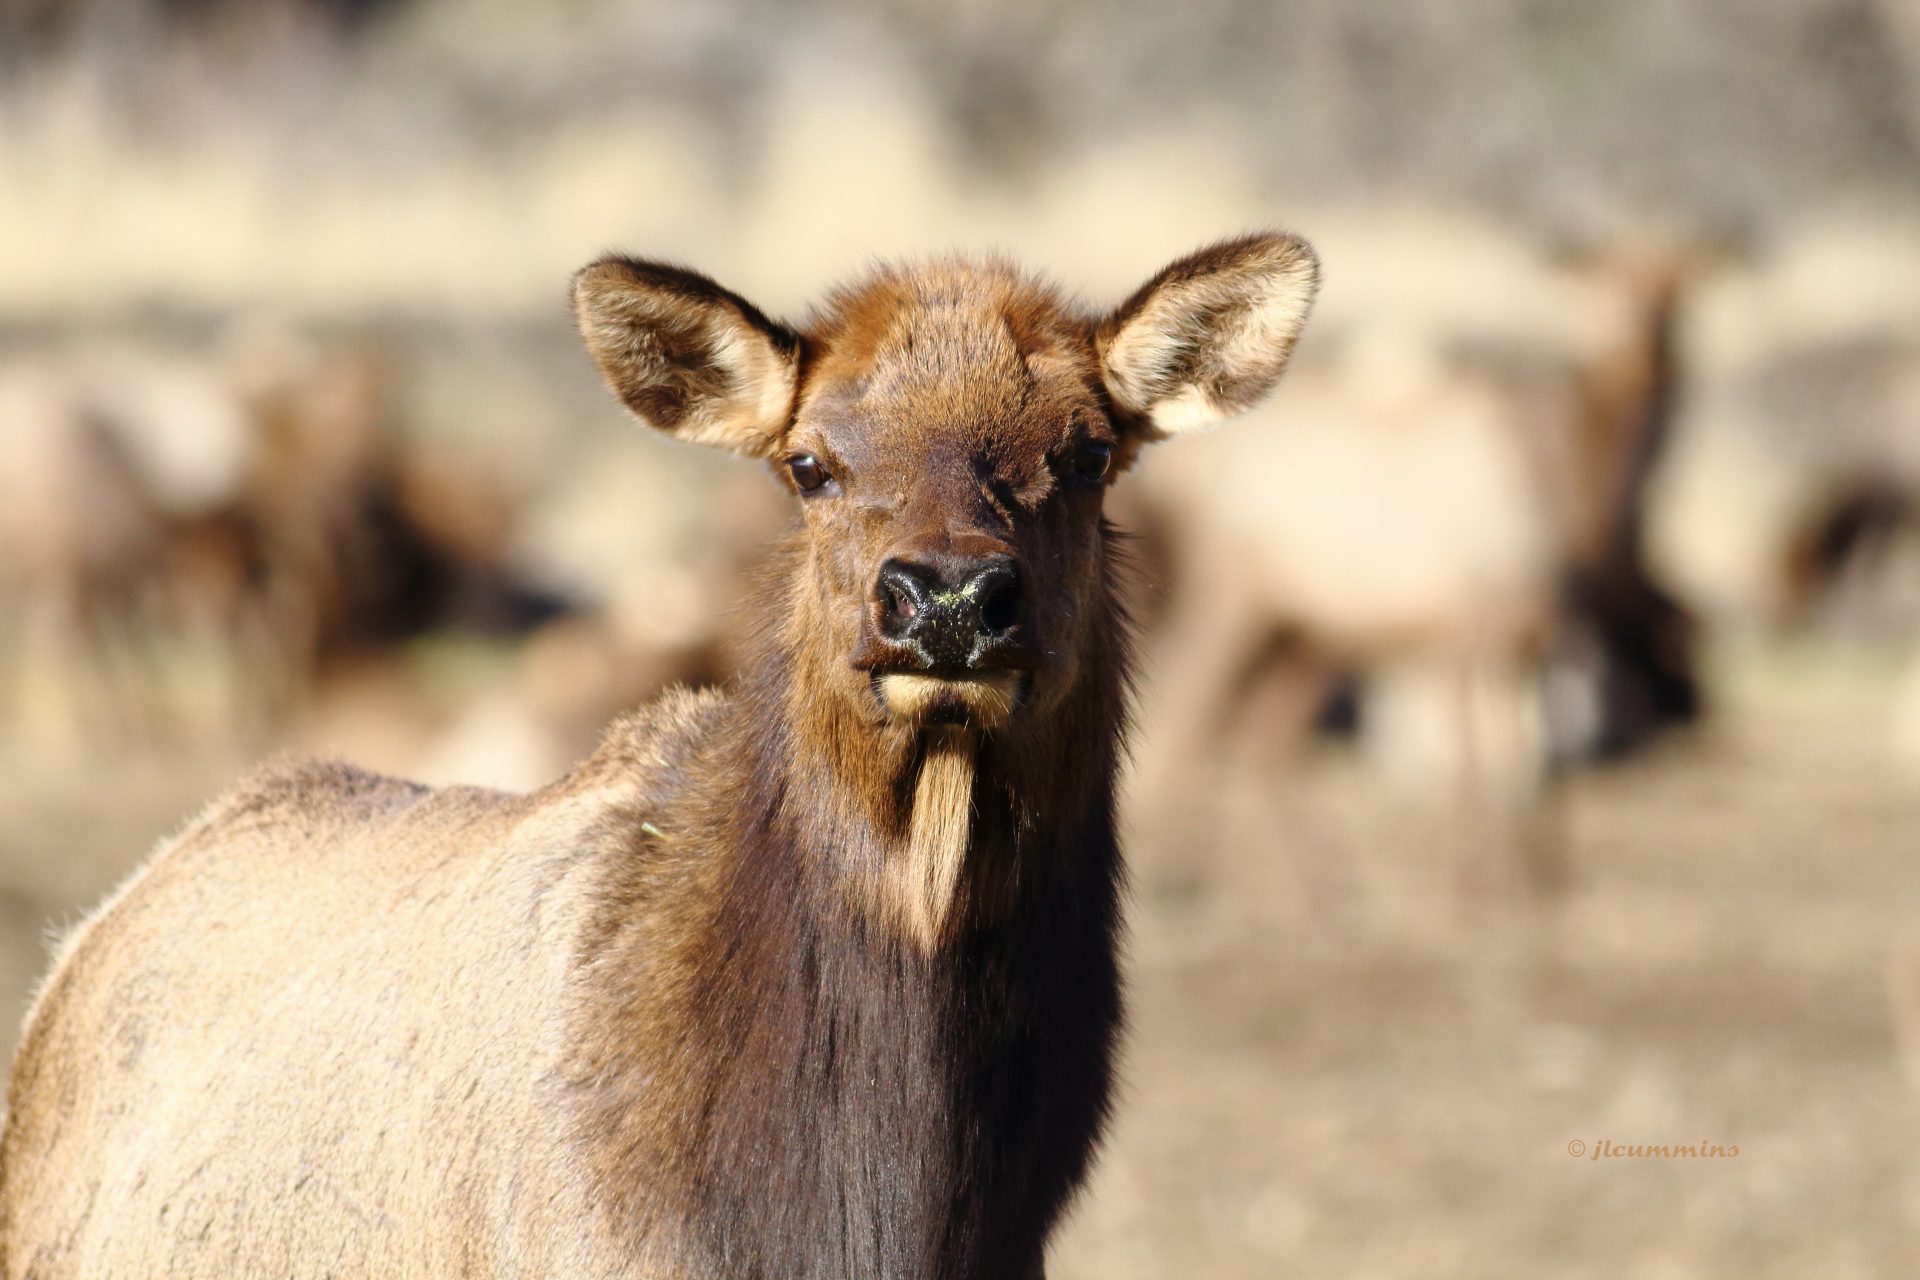 A young elk